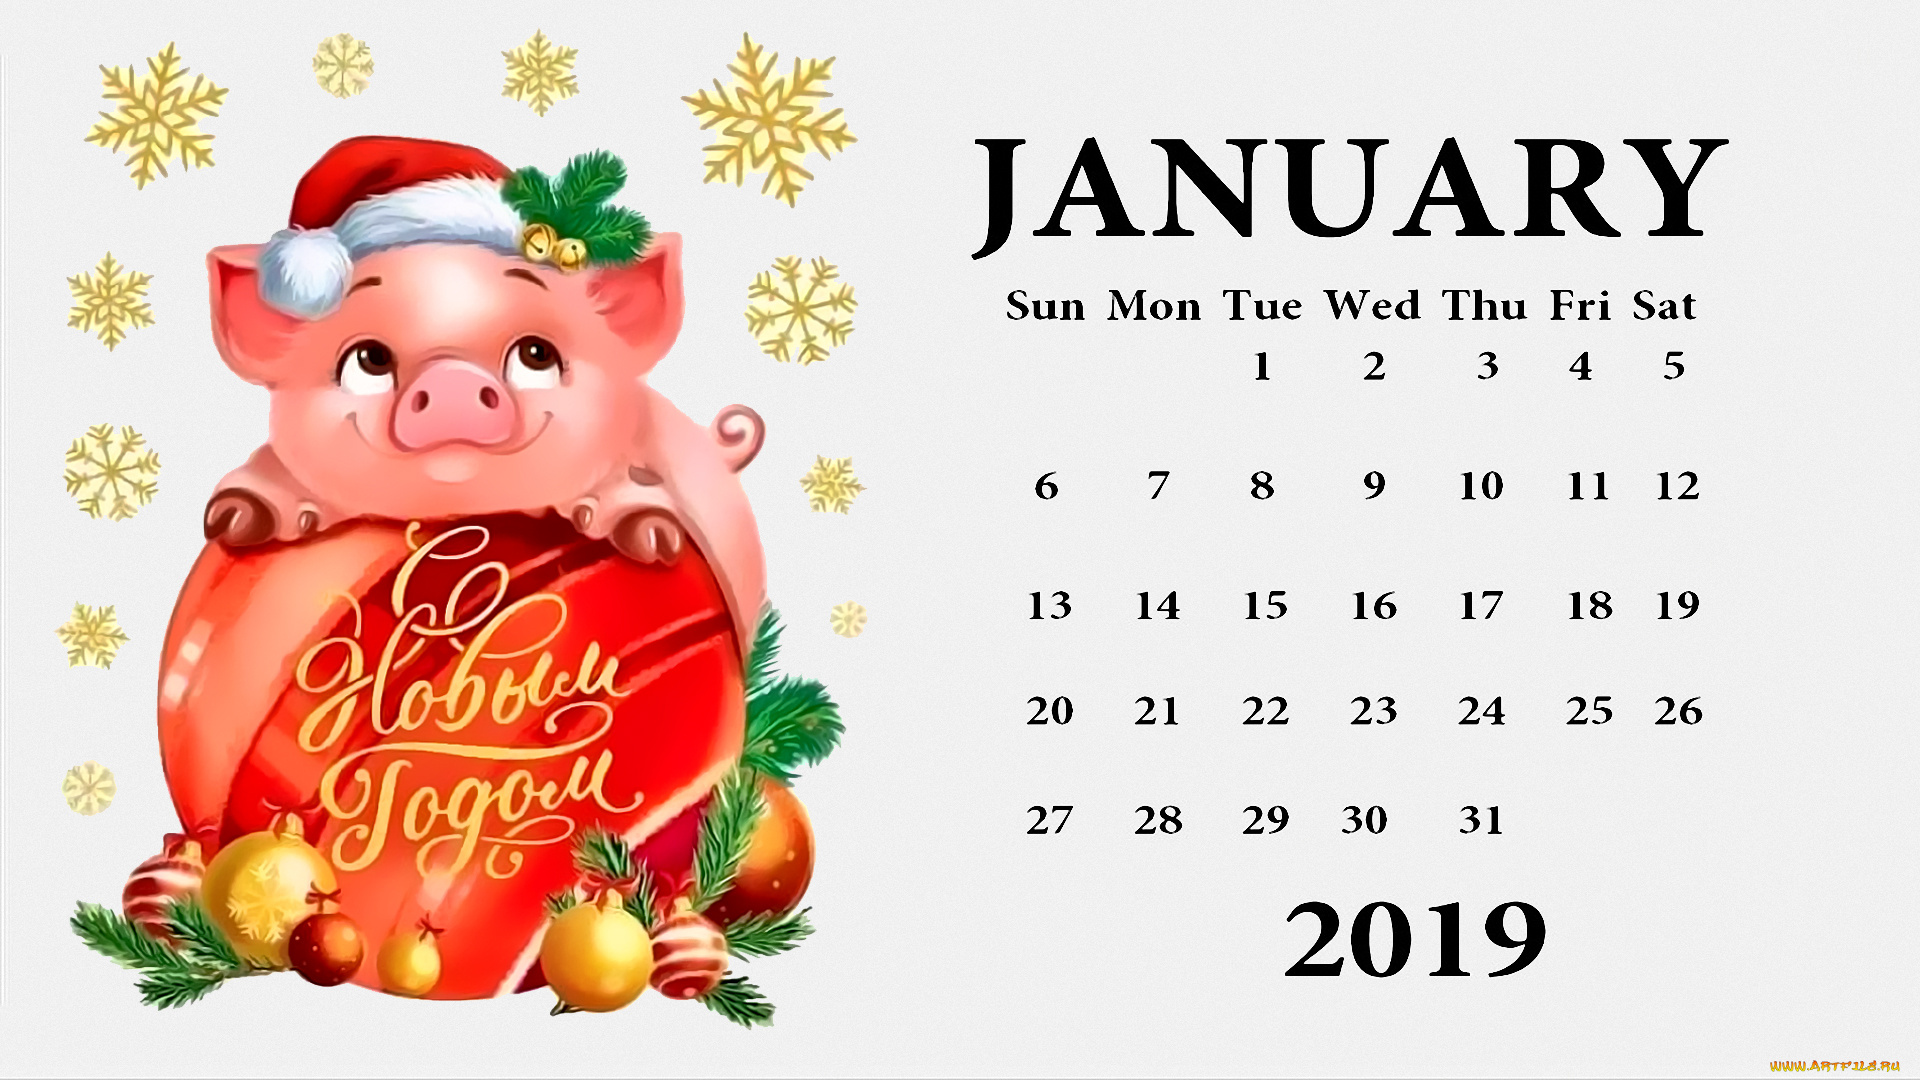 календари, праздники, , салюты, шапка, поросенок, шар, свинья, колокольчик, игрушка